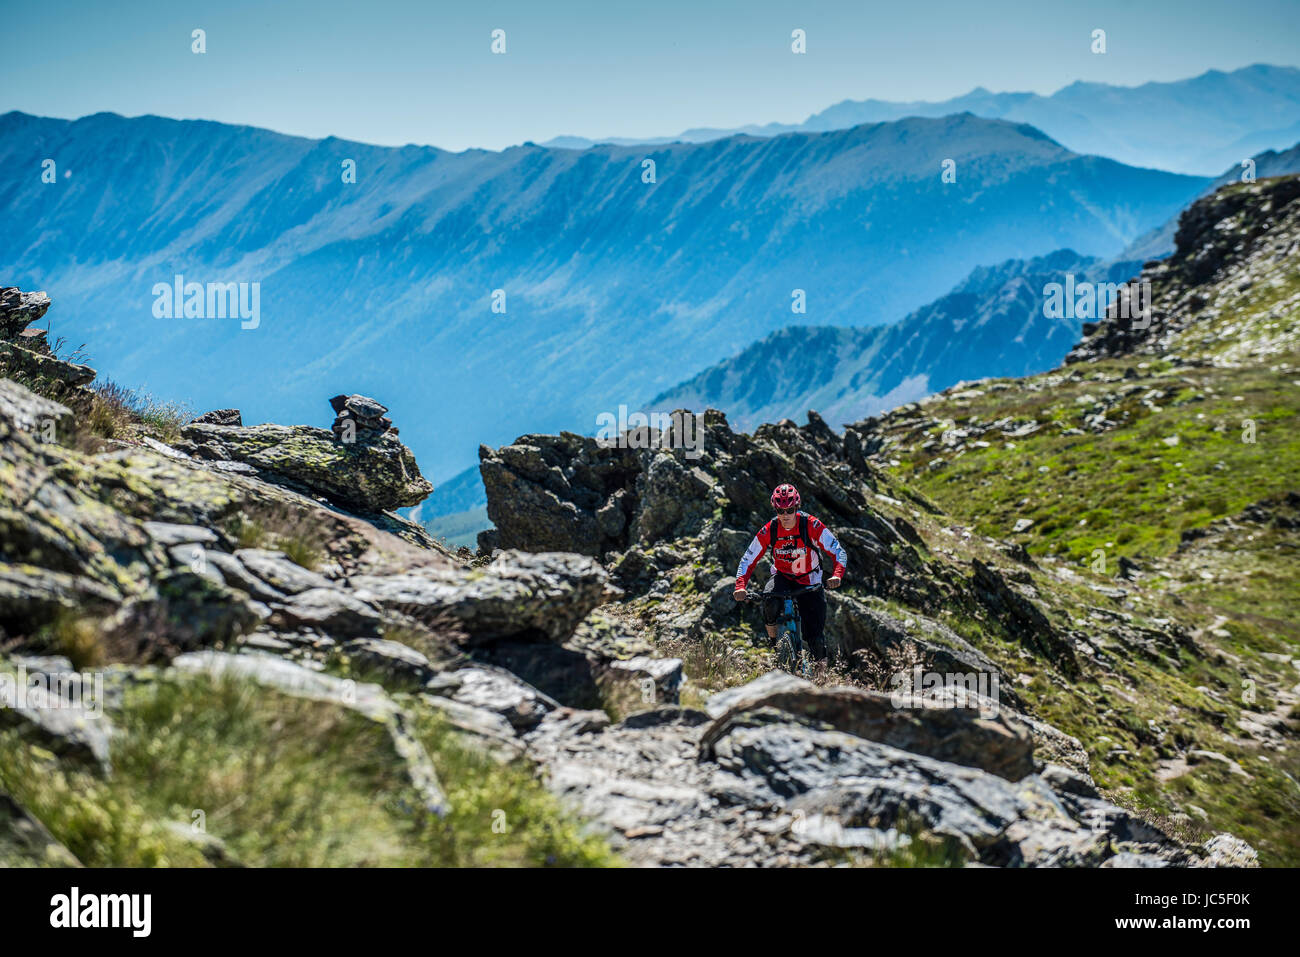 A mountain biker rides along a mountain ridge in Andorra in the Pyrenees. Stock Photo